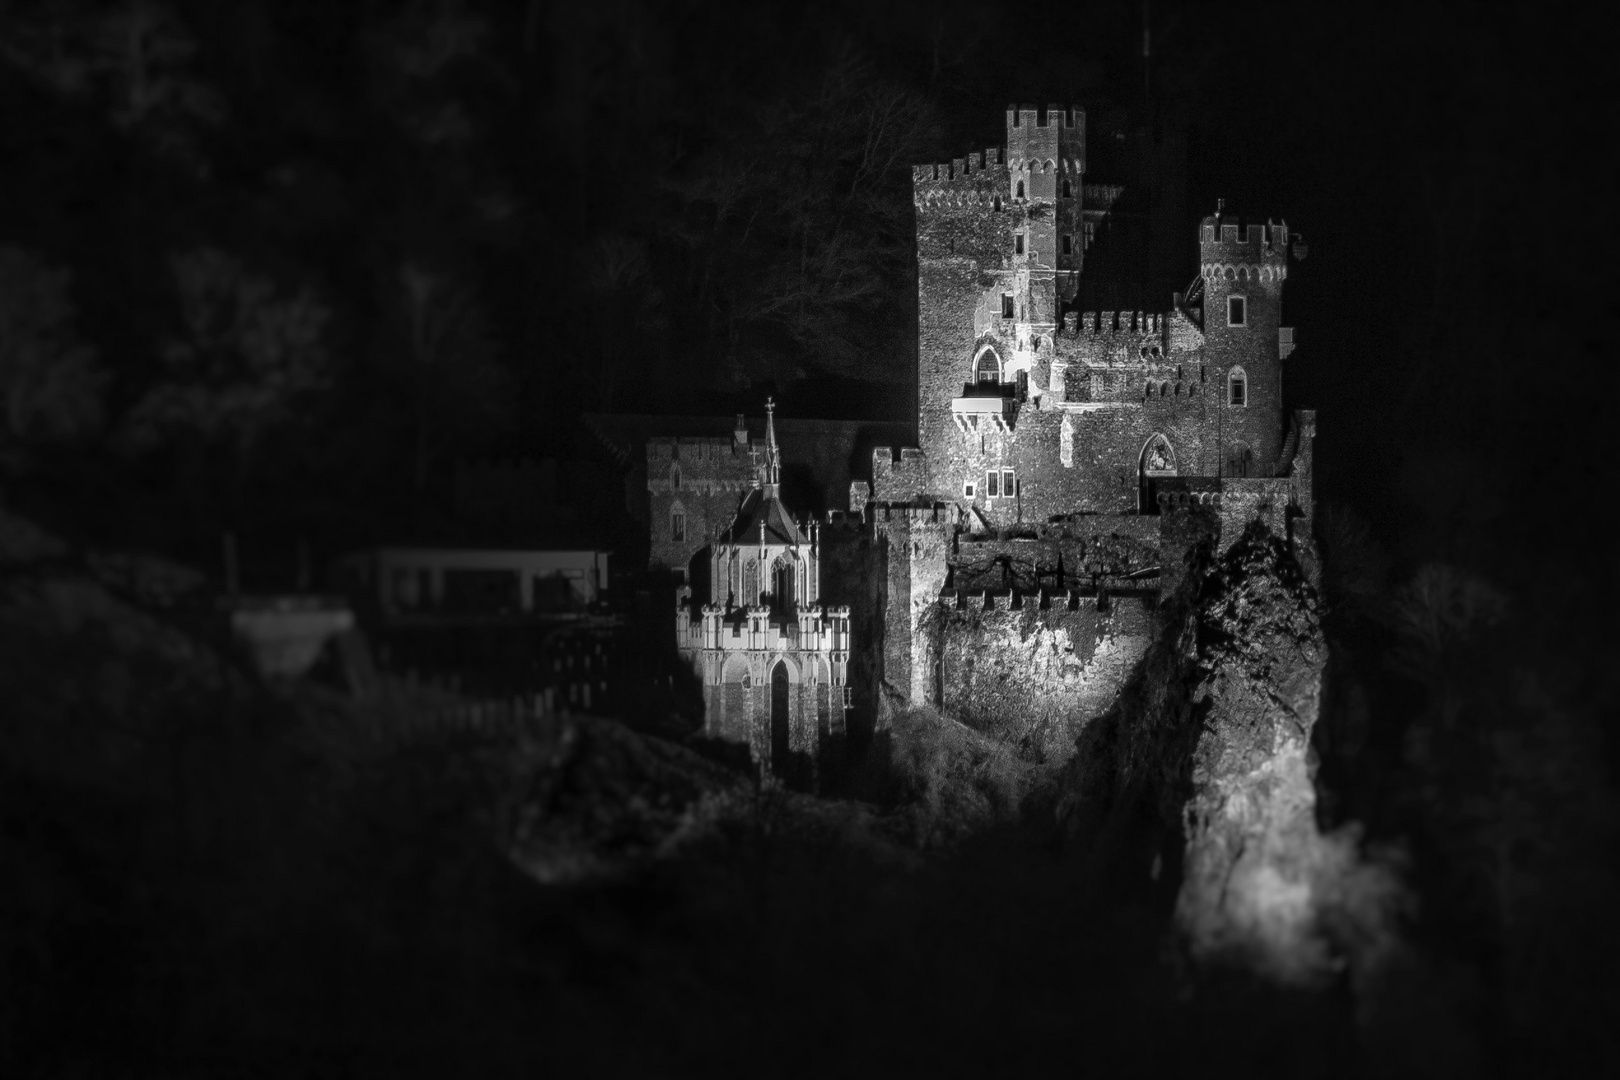 Castle Rheinstein